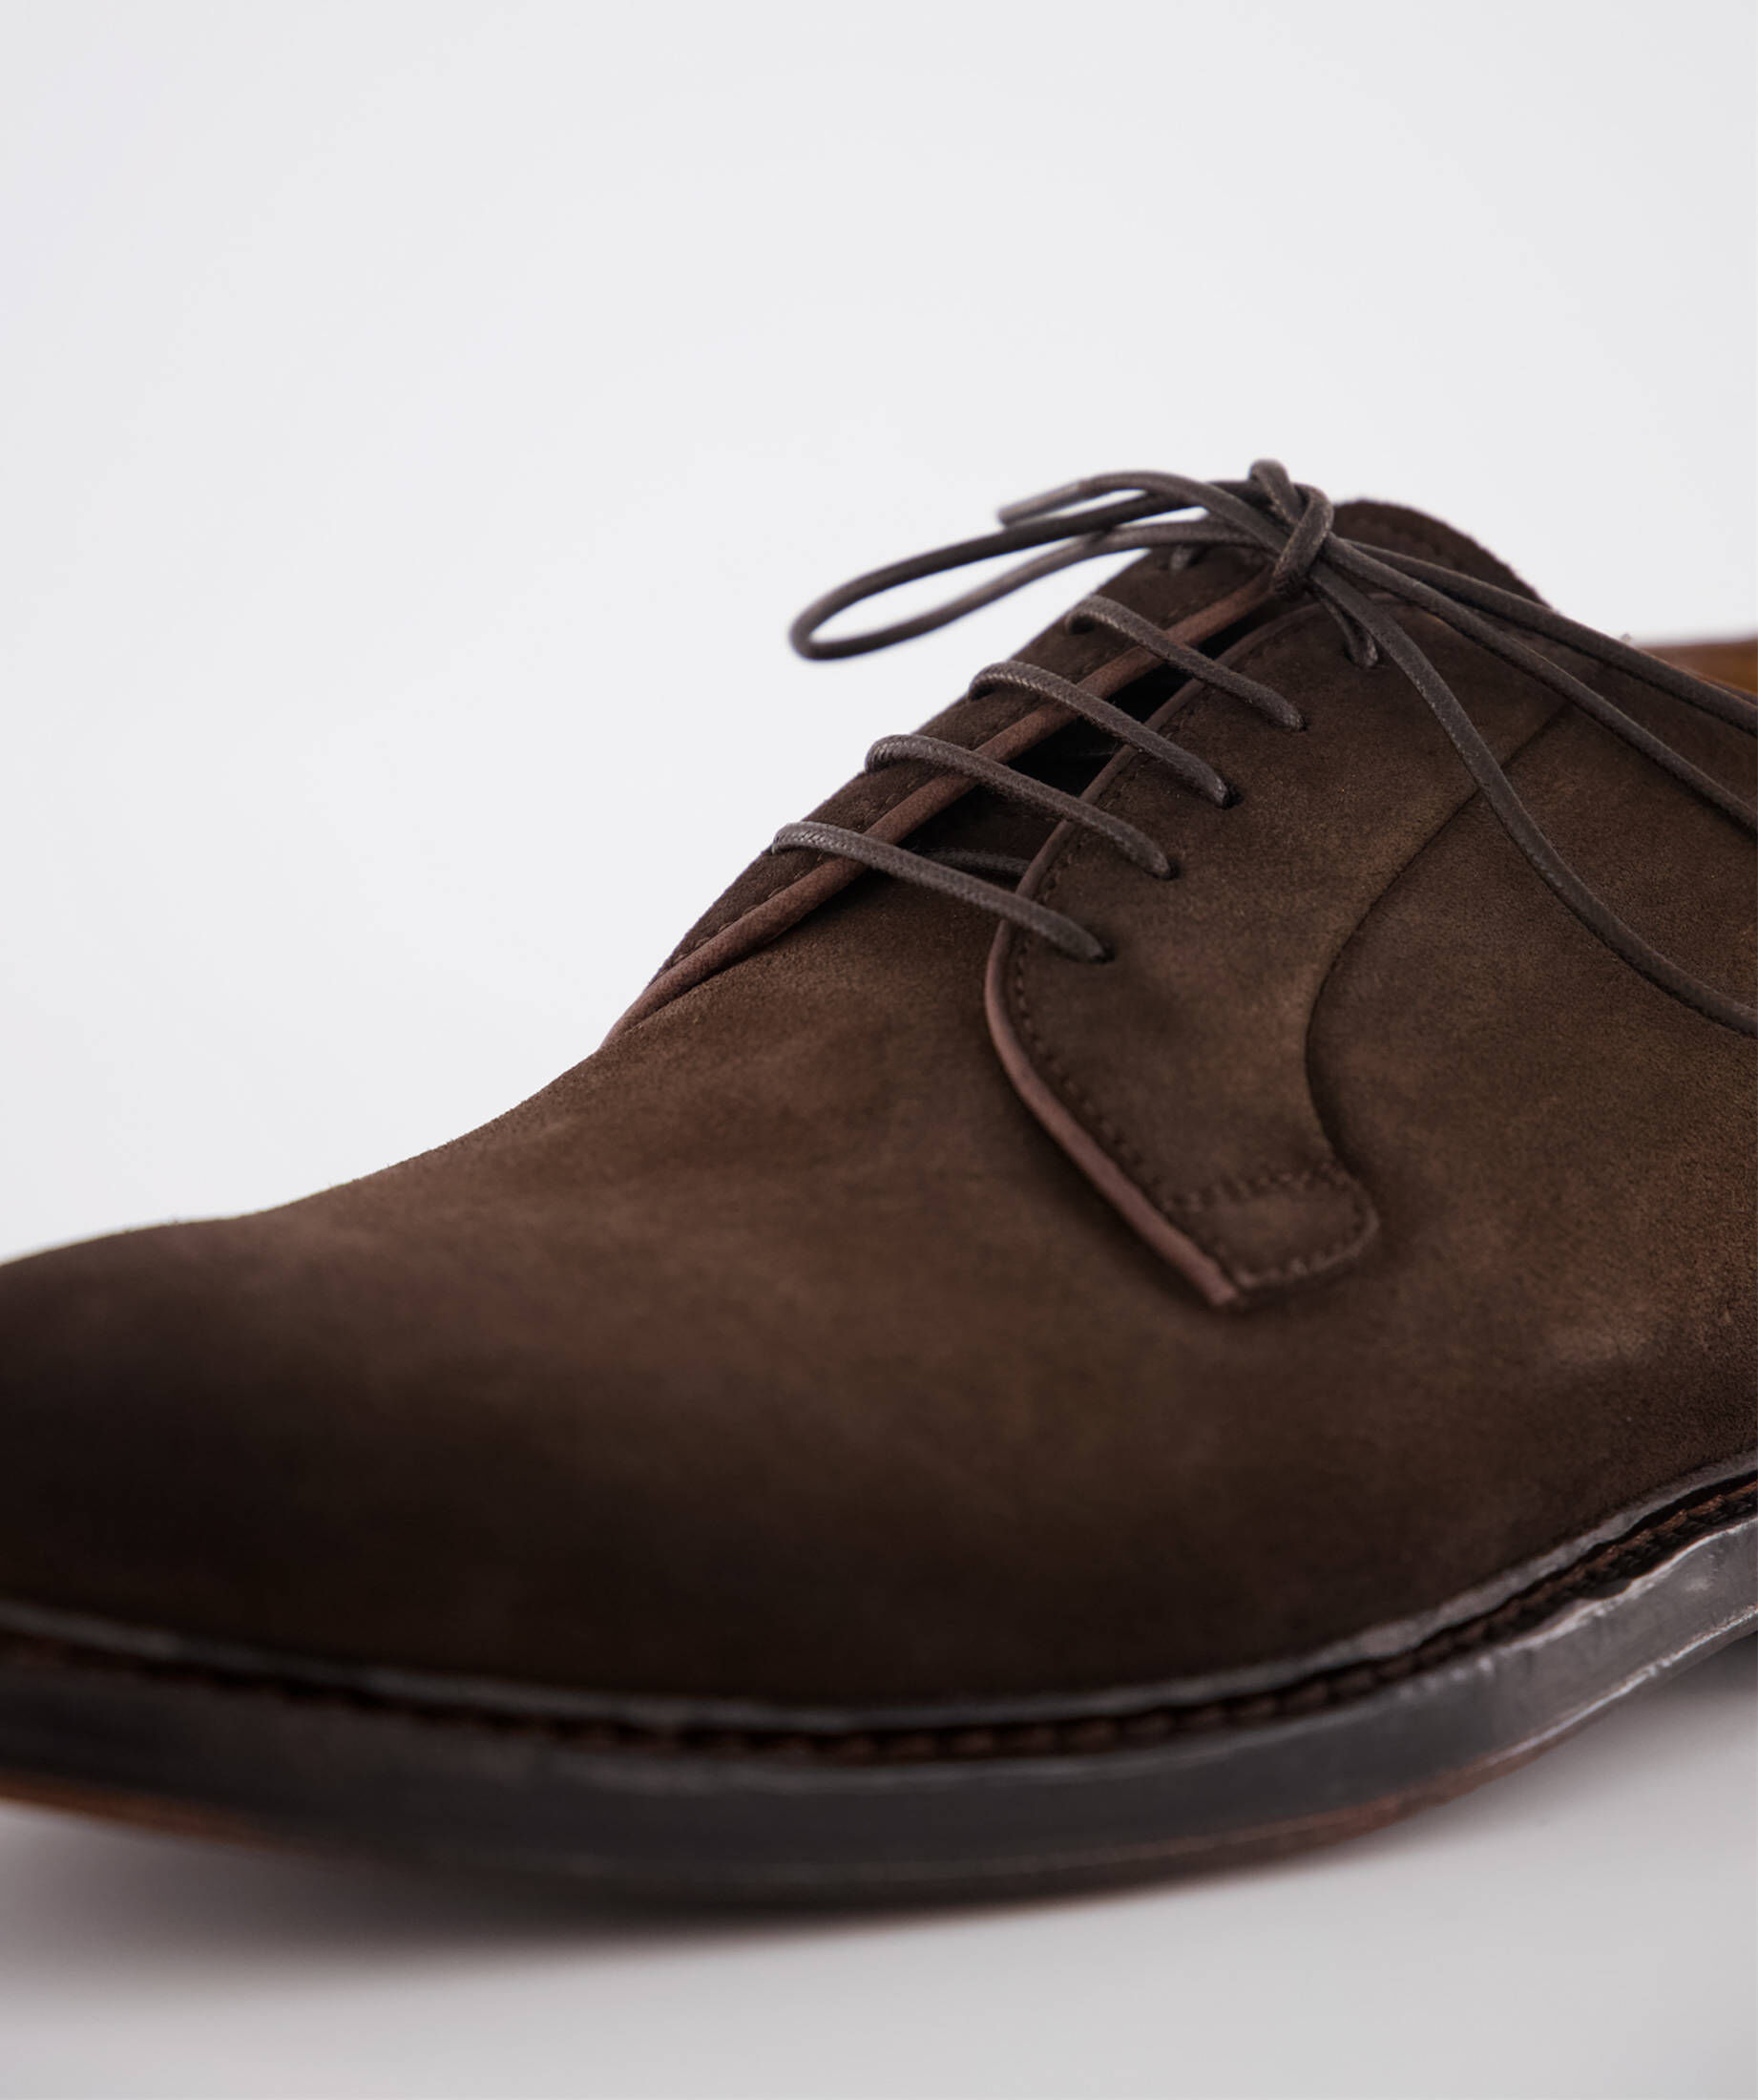 Officine Creative Wildleder Schnürschuh für Herren Herren Schuhe Schnürschuhe Oxford Schuhe 